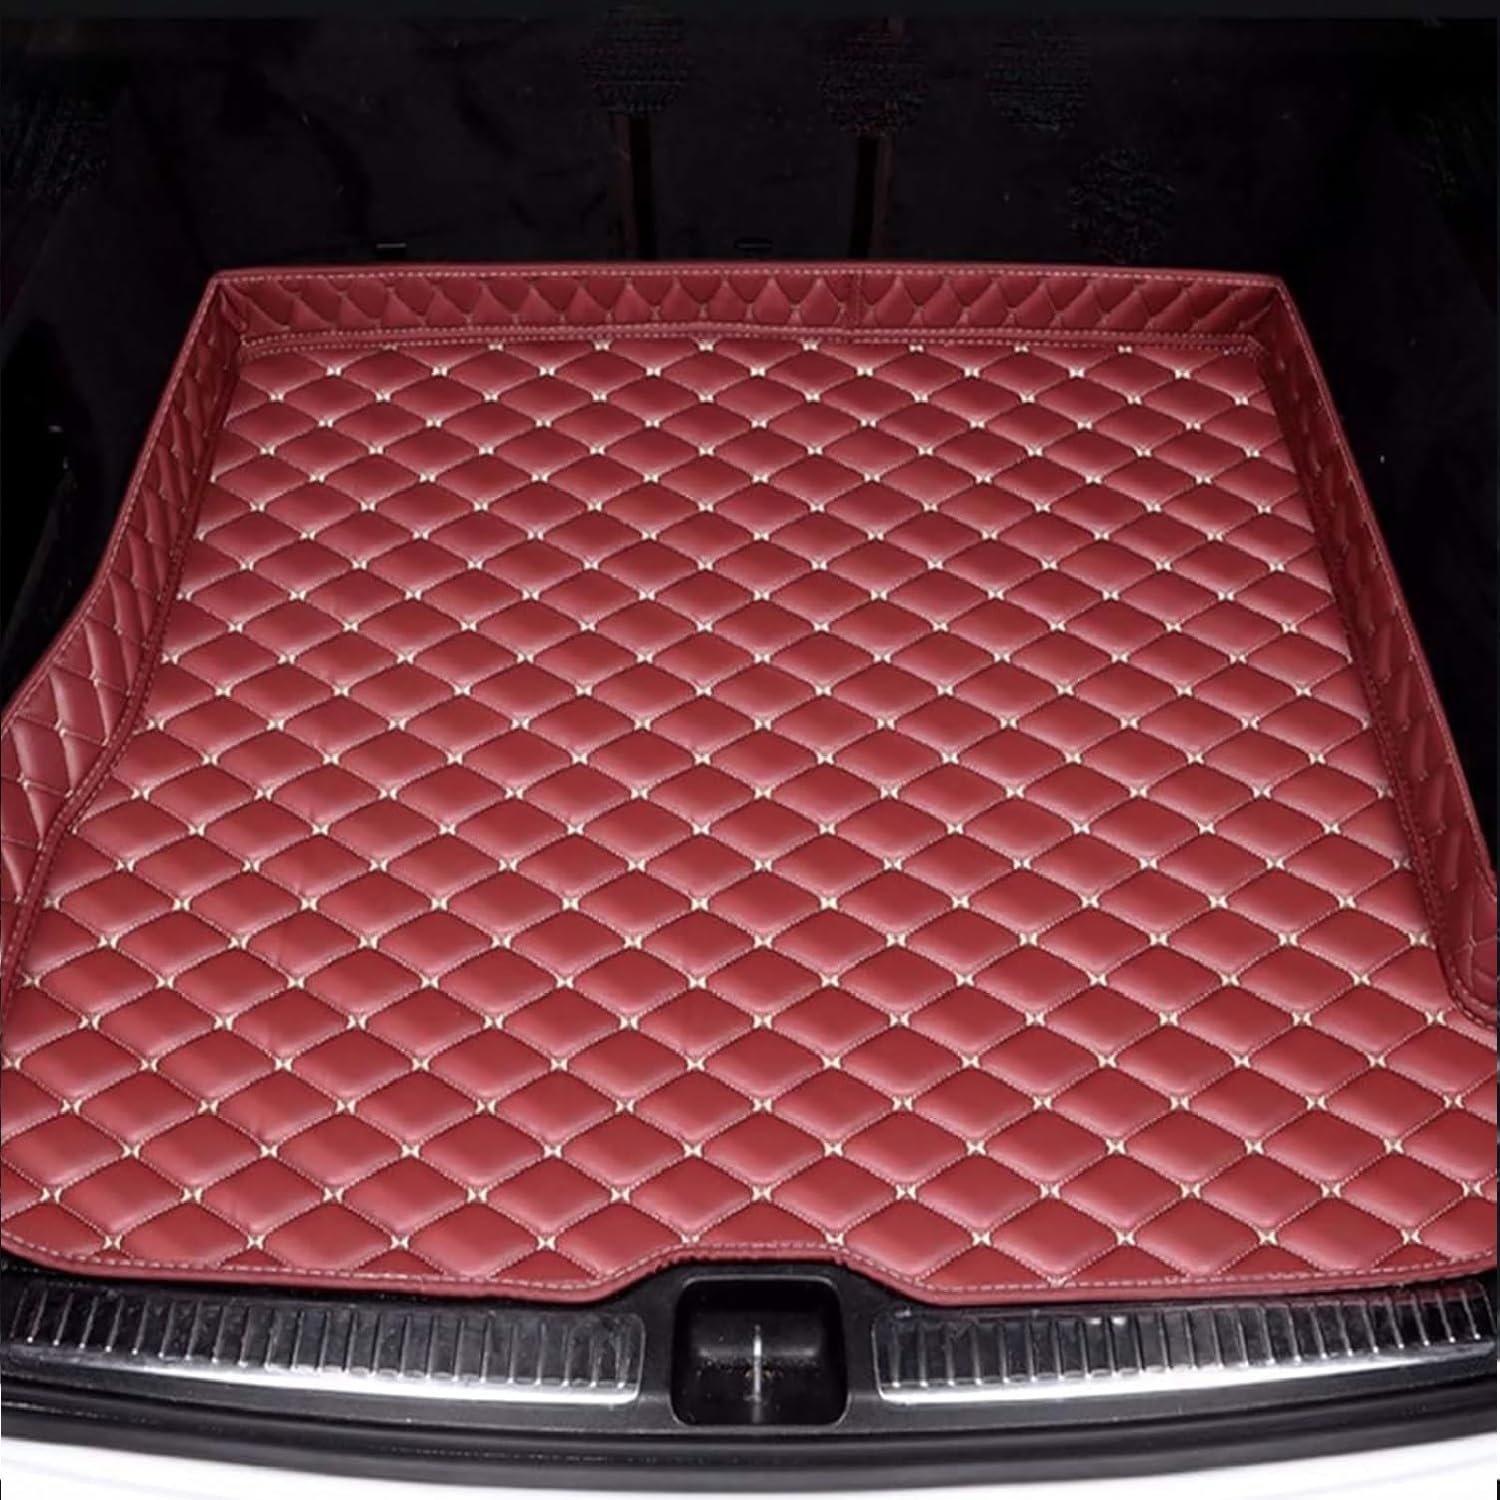 Für Chrysler Grand Voyager 2013-2017 Leder Kofferraummatten für Auto Schutzmatte Kofferraumwanne Wasserdicht Antirutschmatte Kofferraum Innenmatte Zubehör,E/Red von TIUEO